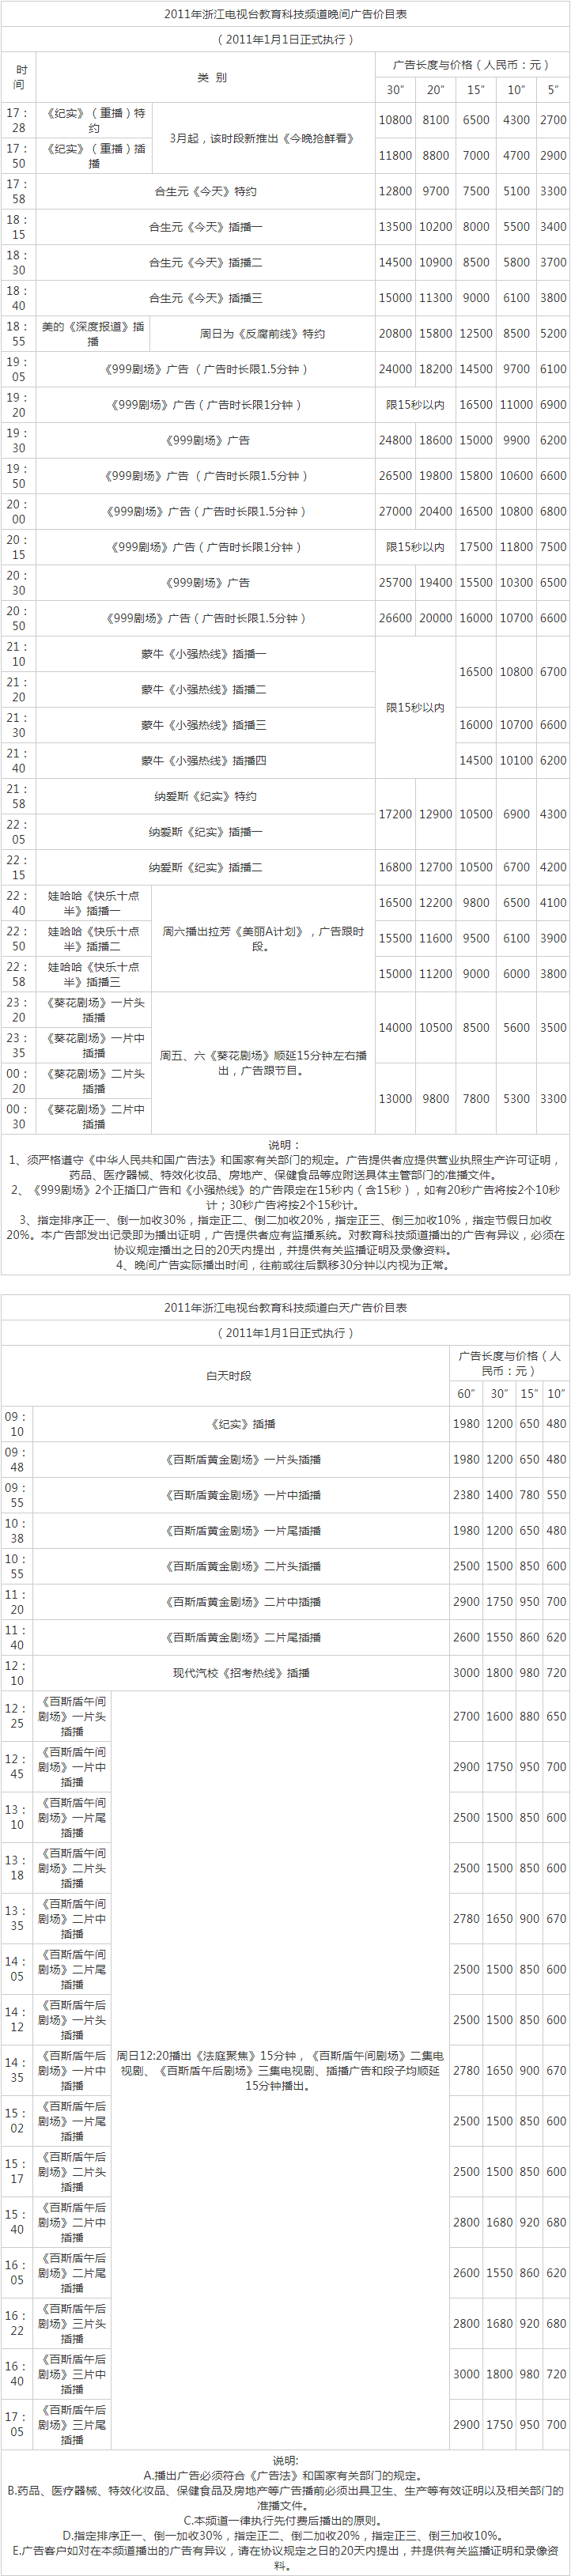 2011浙江电视台教育科技频道 ZTV-4广告报价表.png